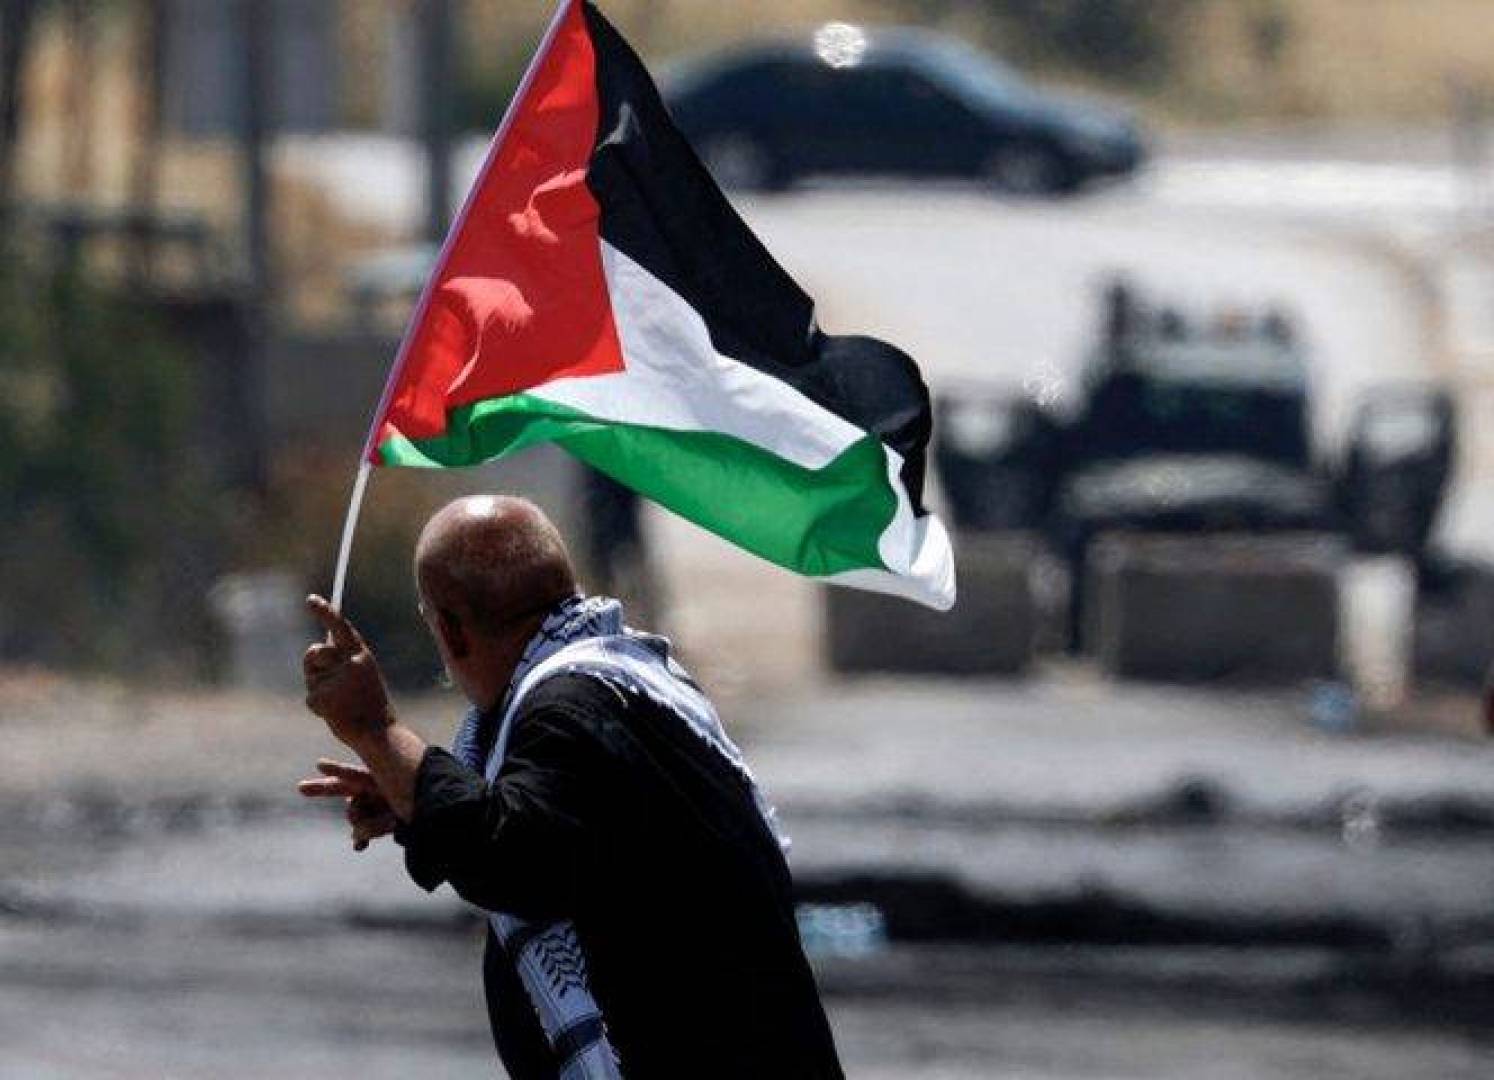 بيان صادر عن جبهة الخلاص الوطني الفلسطيني حول جريمة الكيان المؤقت في مدينة نابلس.